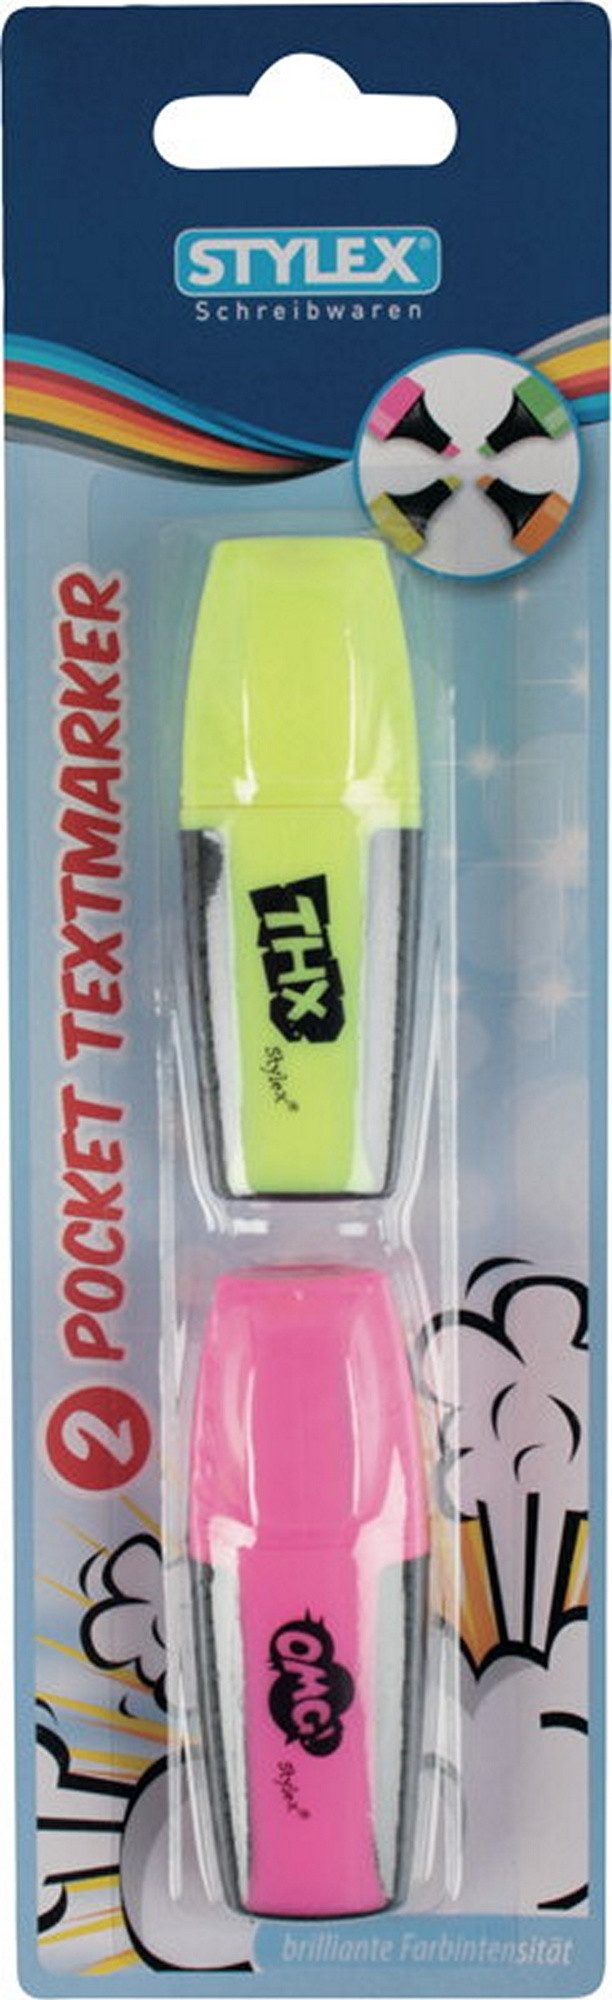 Stylex Schreibwaren Marker 2 Mini Textmarker / Farbe: je 1x pink + gelb